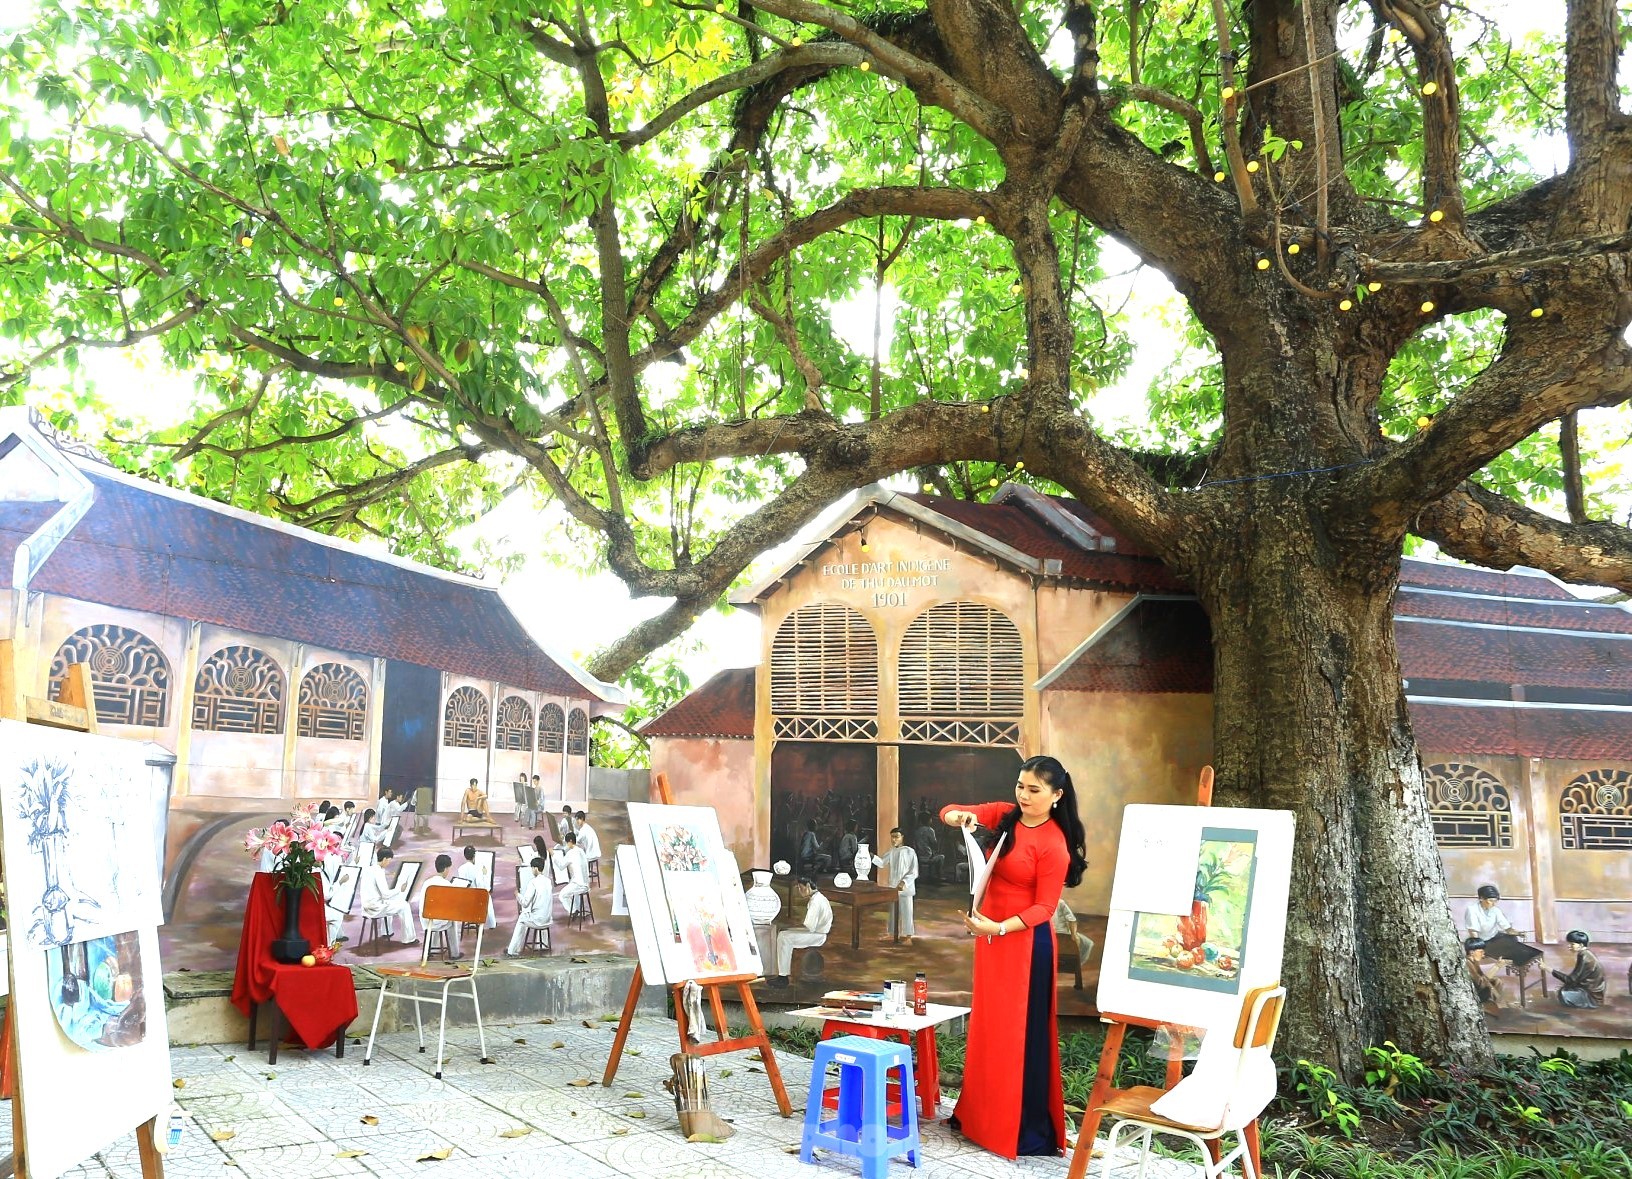 Tận thấy cây Trôm 150 năm tuổi đẹp như tranh được công nhận di sản Việt Nam- Ảnh 2.